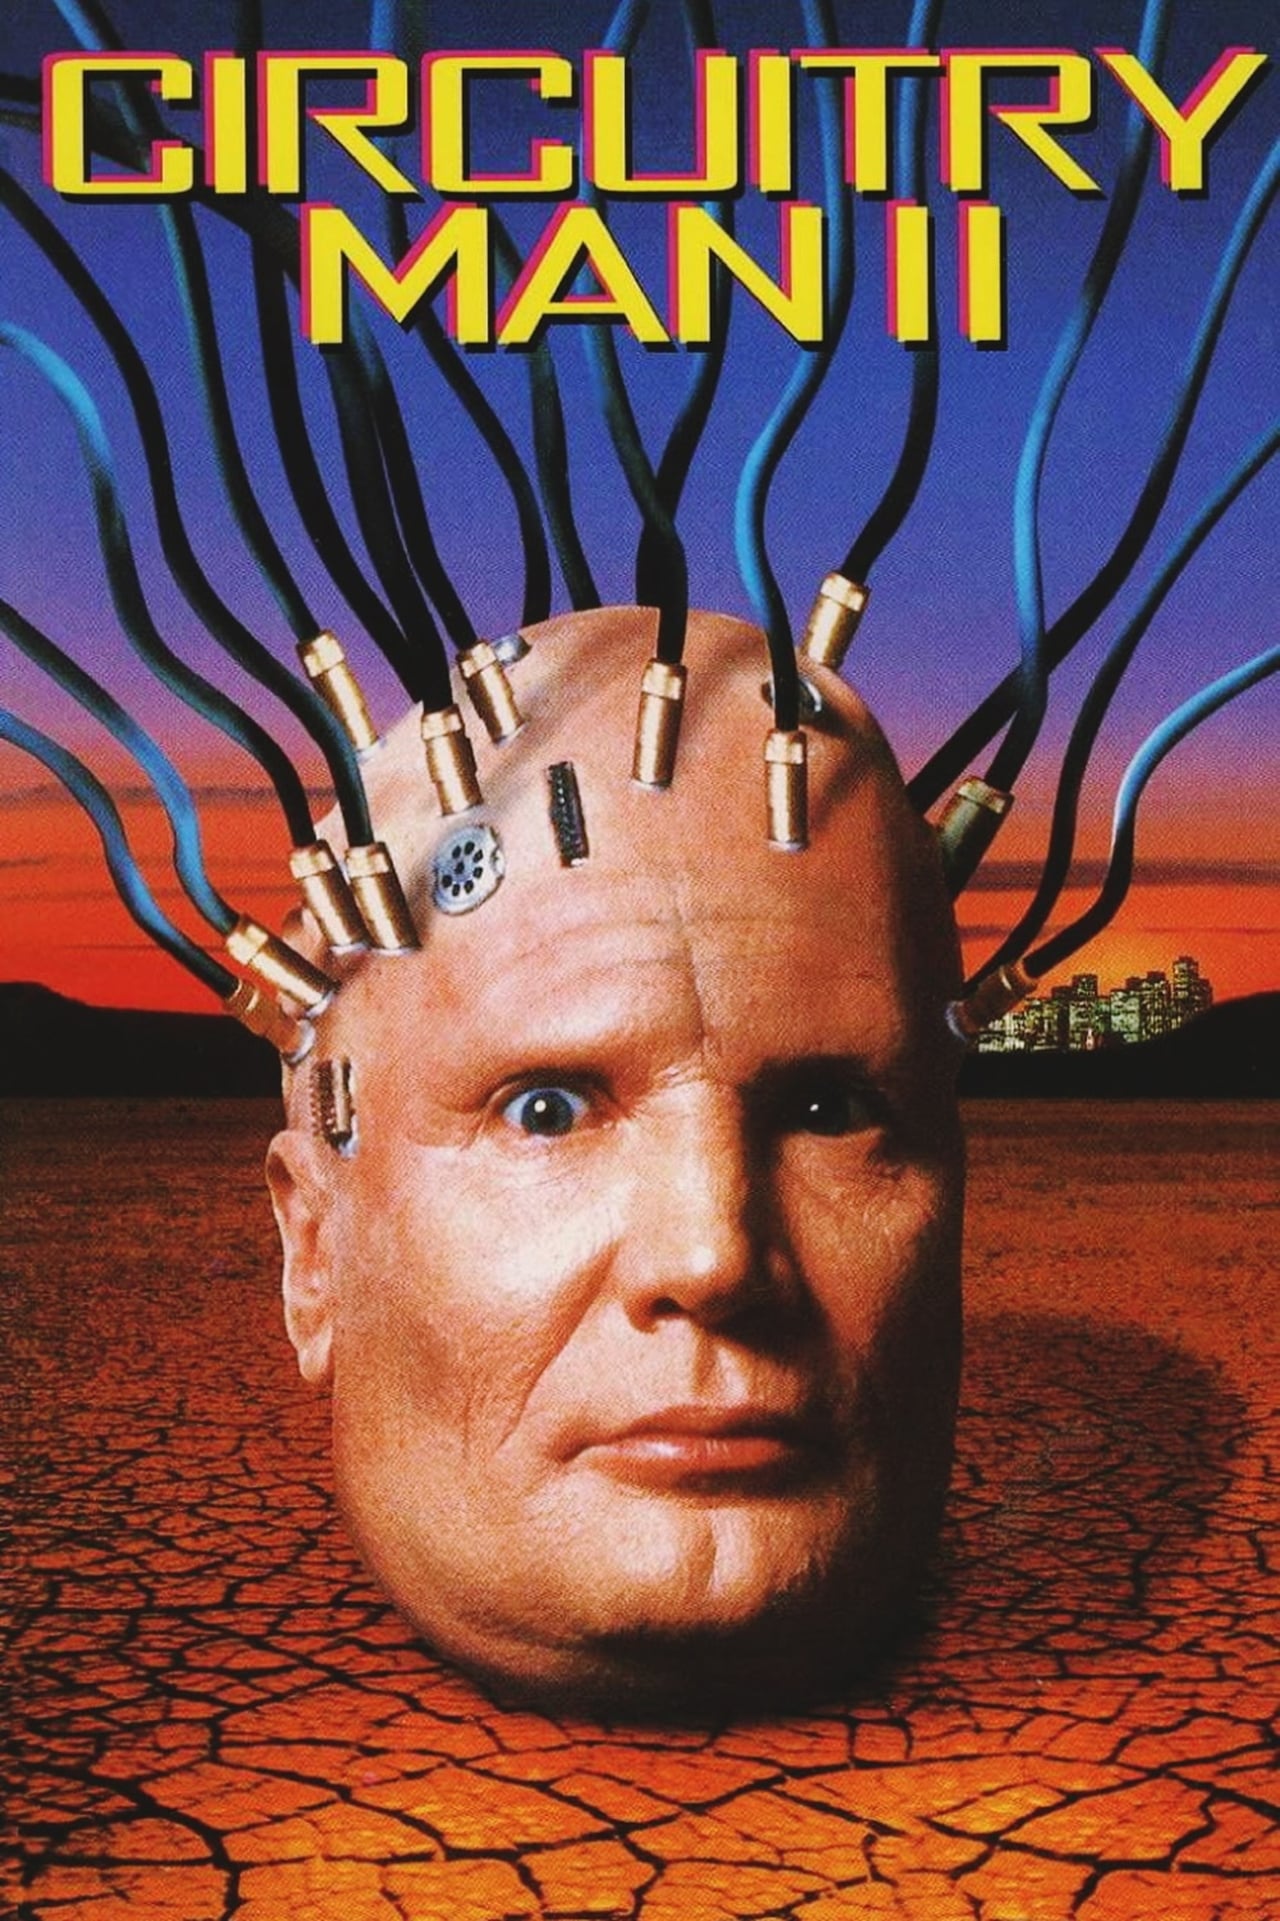 Plughead rewired: circuitry man II, 1994